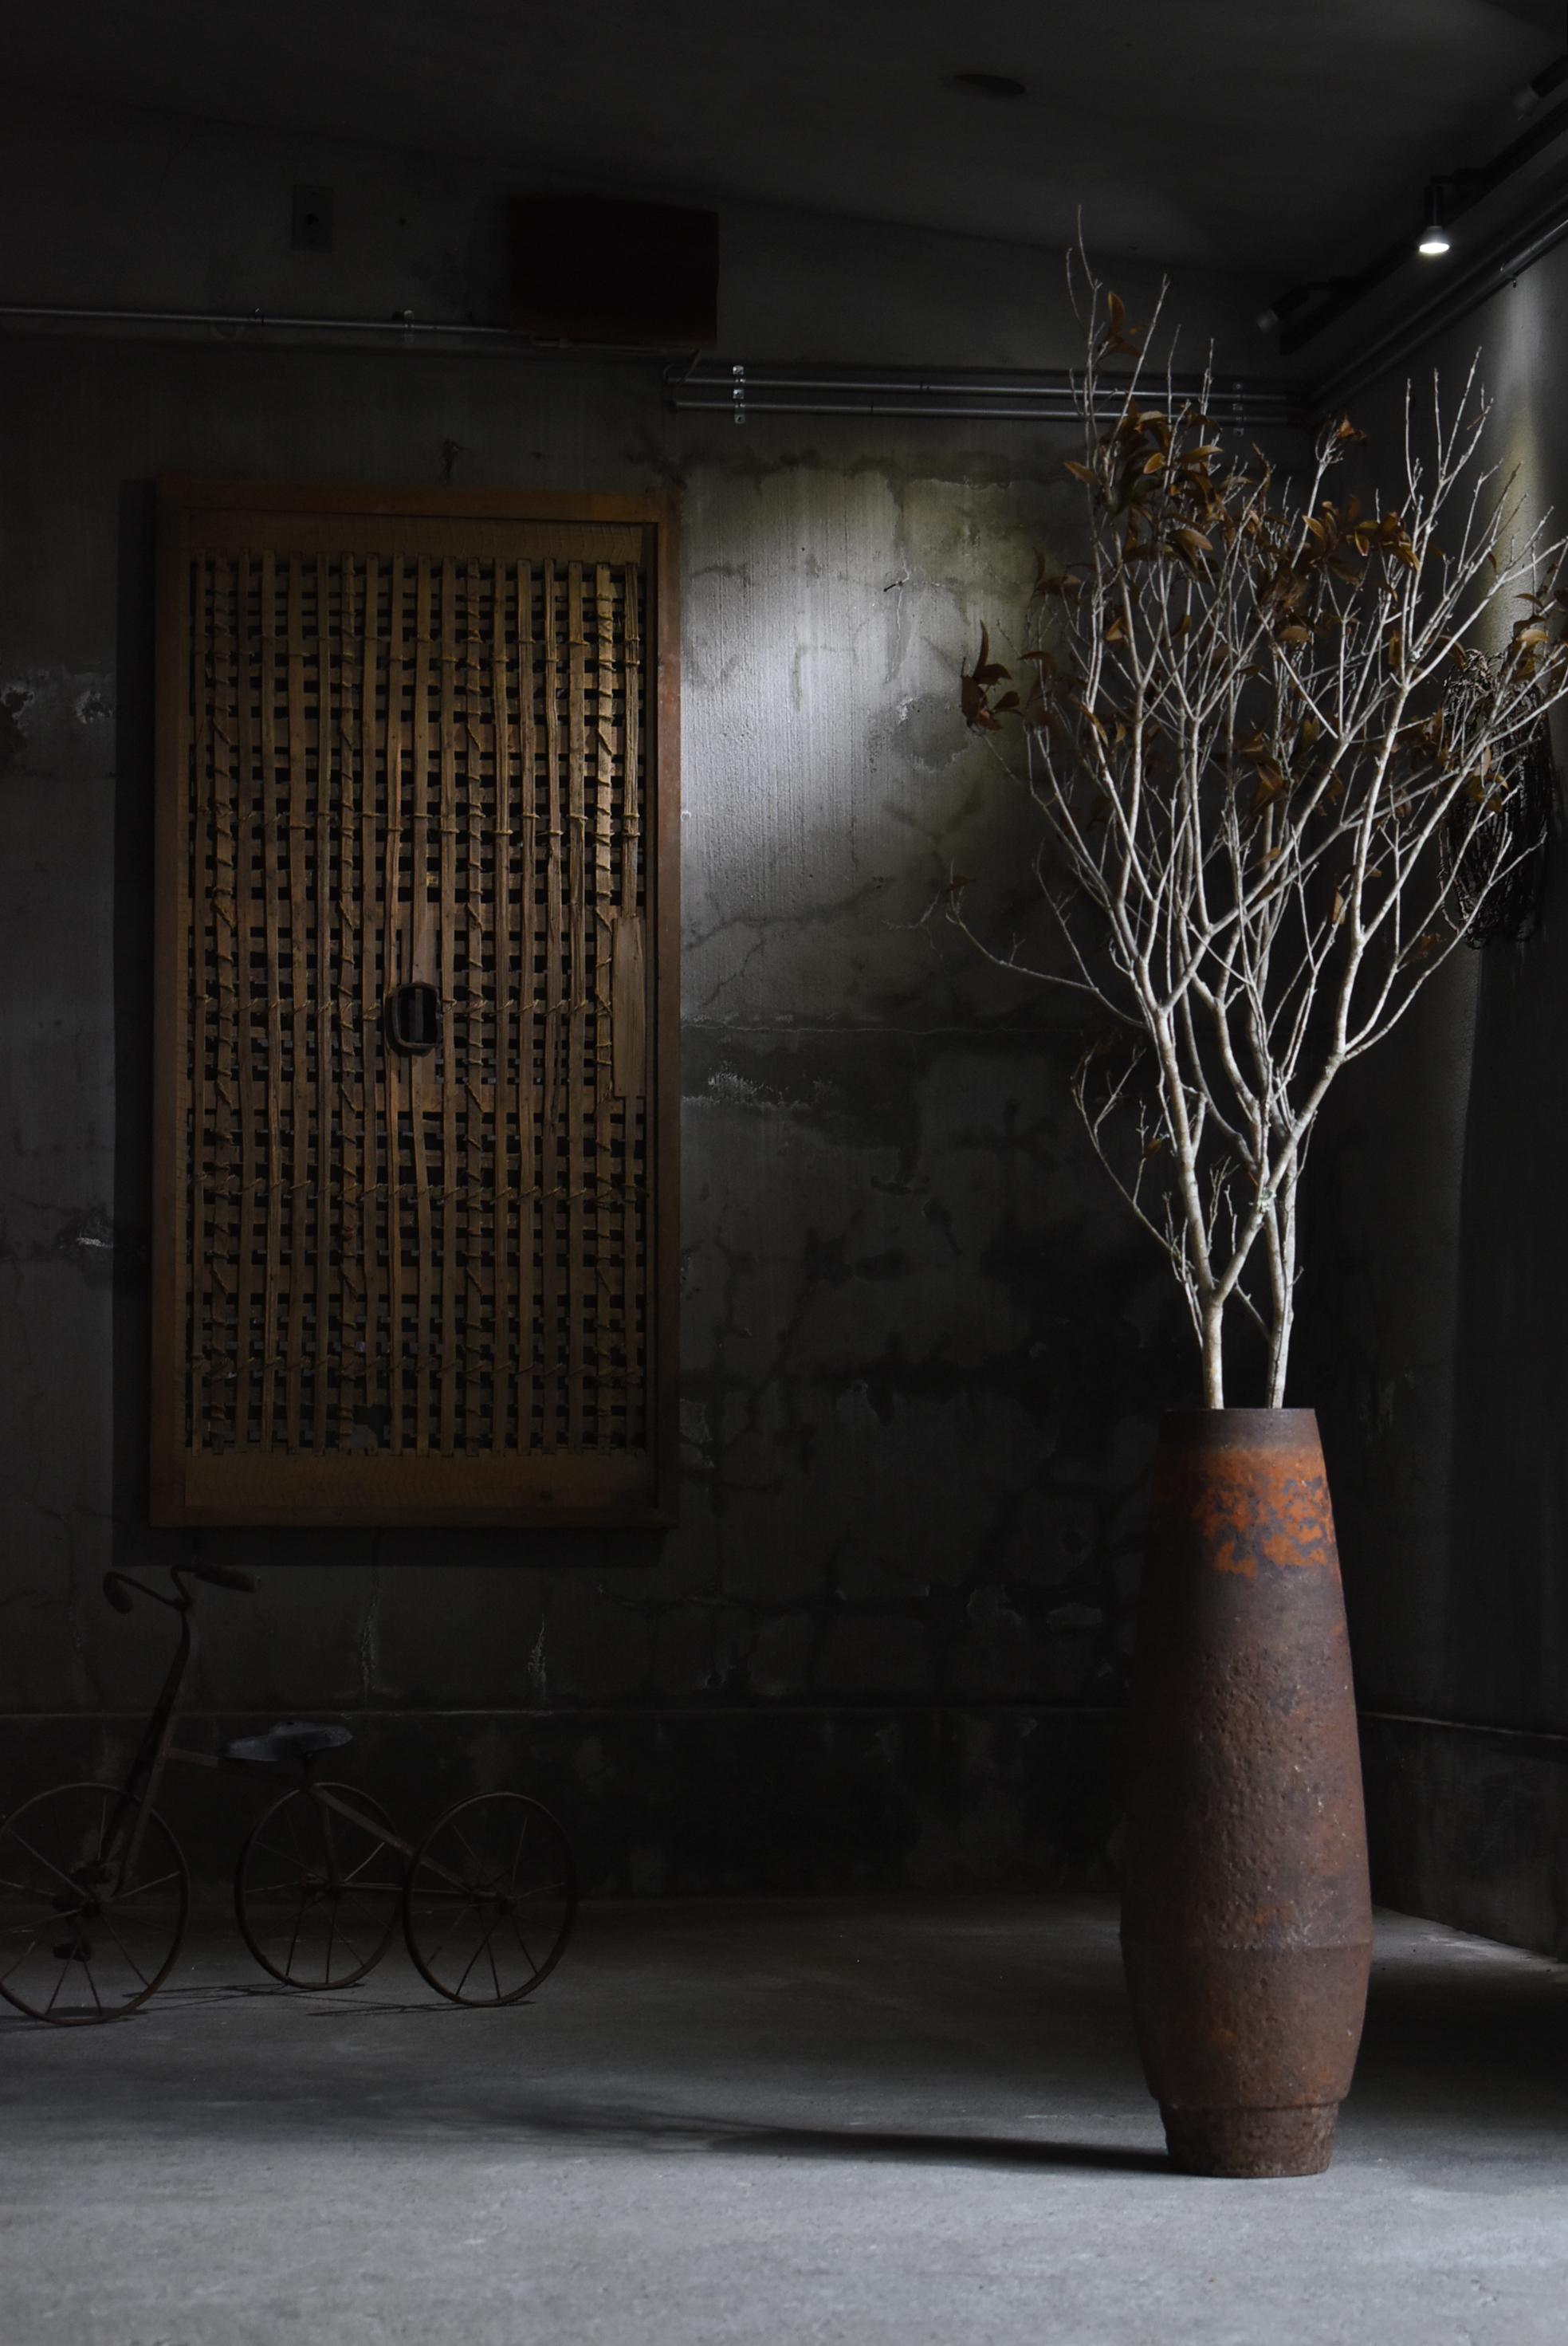 Il s'agit d'une porte utilisée dans un très vieil entrepôt japonais.
Cette porte a été fabriquée à l'ère Meiji. (1860-1900).
Le cadre est en bois de cèdre avec une poignée en fer au centre.

La porte était faite de plâtre et de boue, mais le plâtre